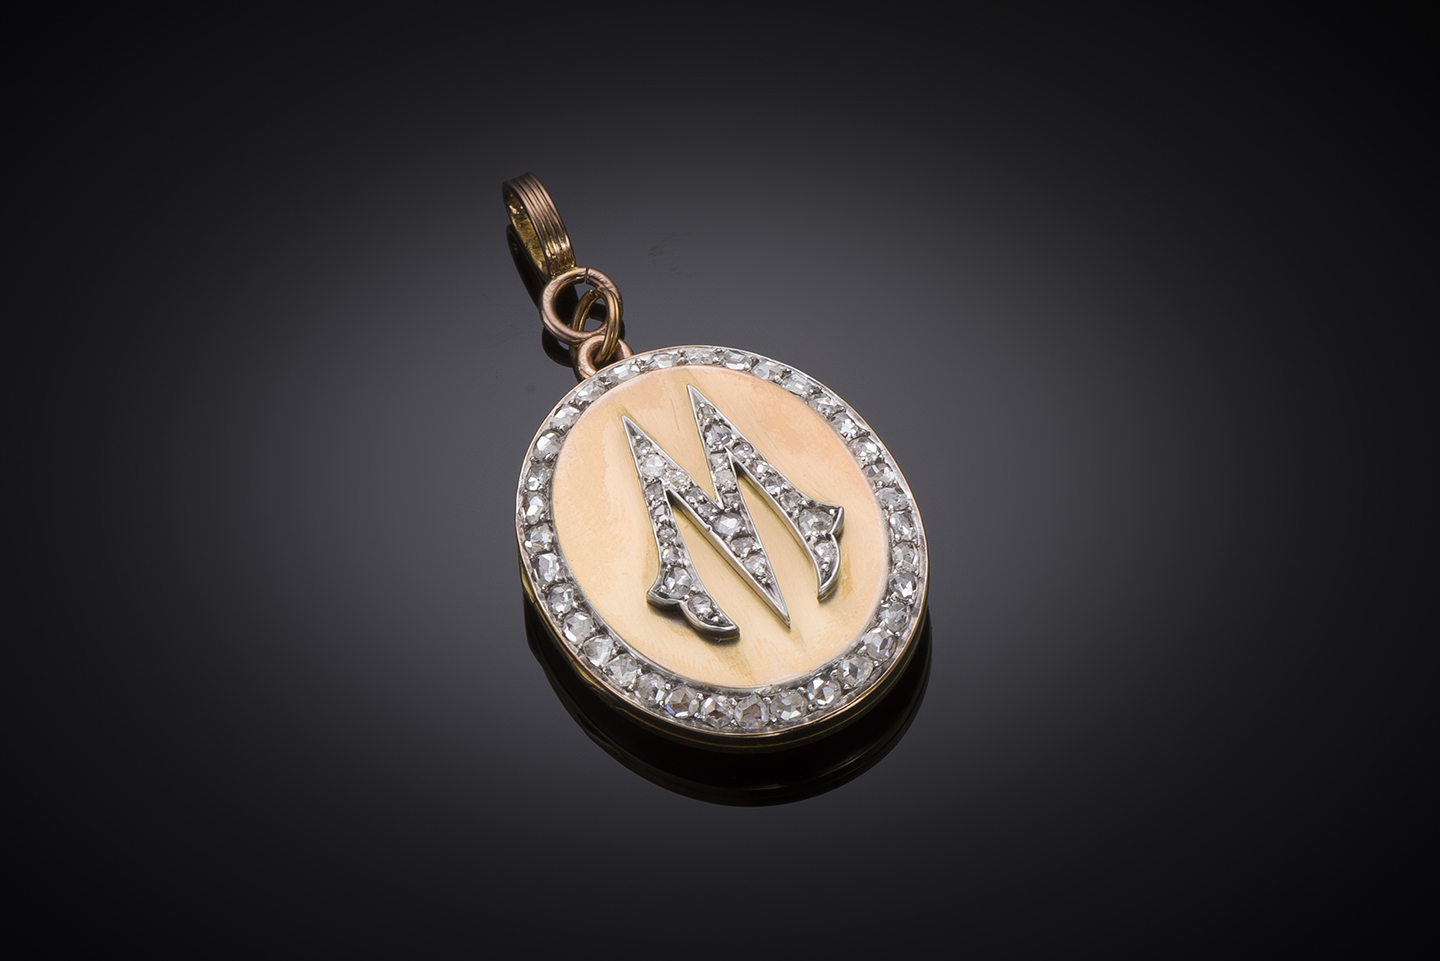 Pendentif ouvrant diamants avec un portait émaillé (procédé Deroche). Bijou de sentiment avec lettre M symbolisant l’amour daté de 1874.-1